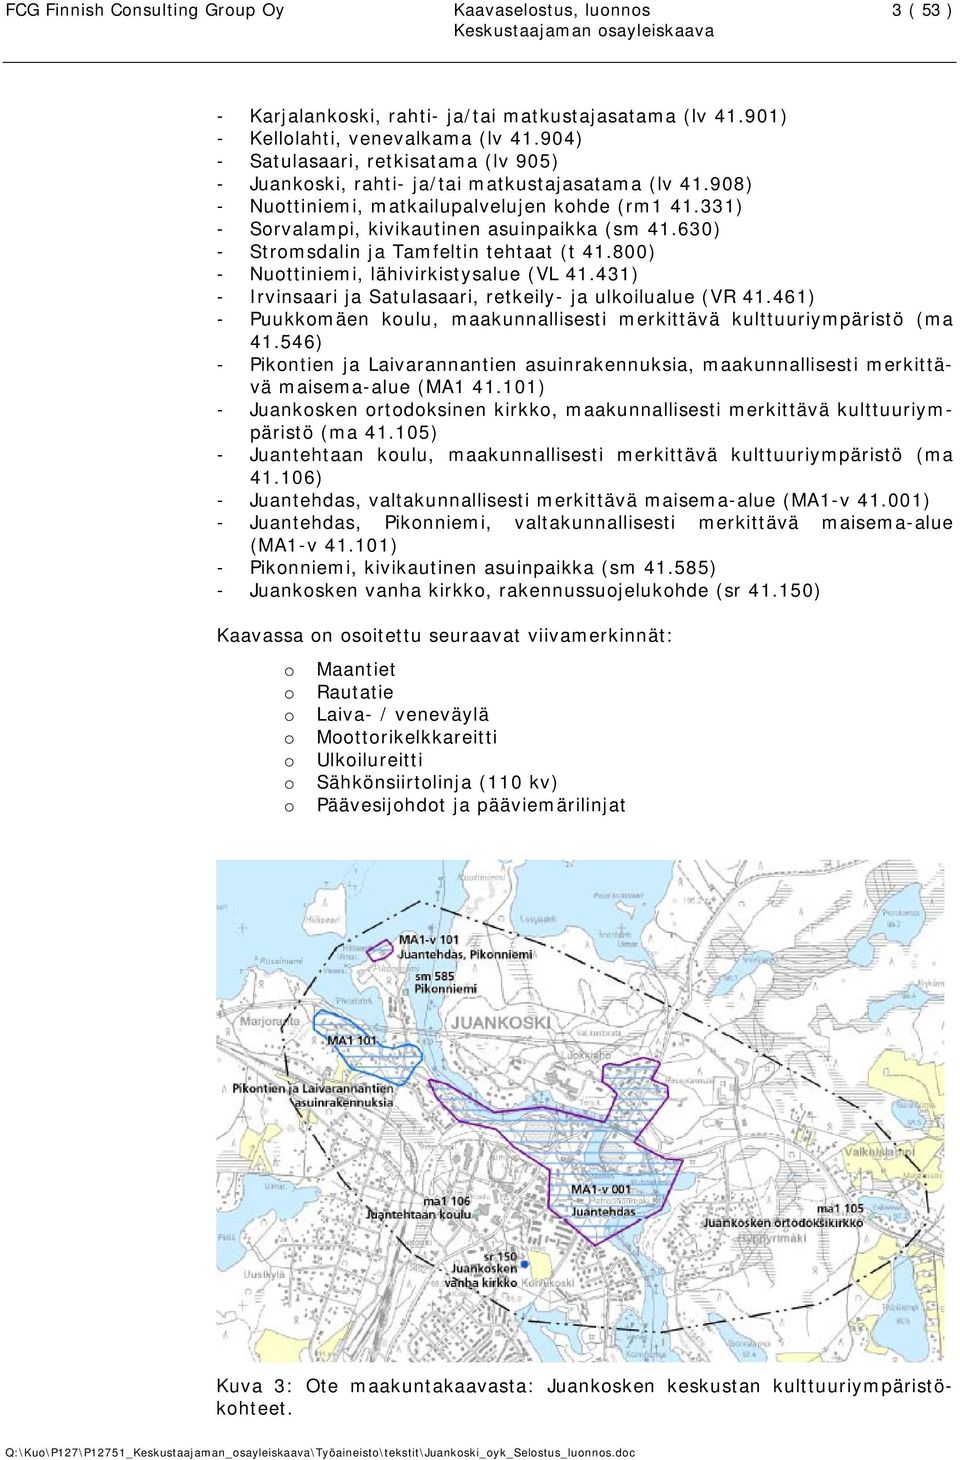 630) - Stromsdalin ja Tamfeltin tehtaat (t 41.800) - Nuottiniemi, lähivirkistysalue (VL 41.431) - Irvinsaari ja Satulasaari, retkeily- ja ulkoilualue (VR 41.